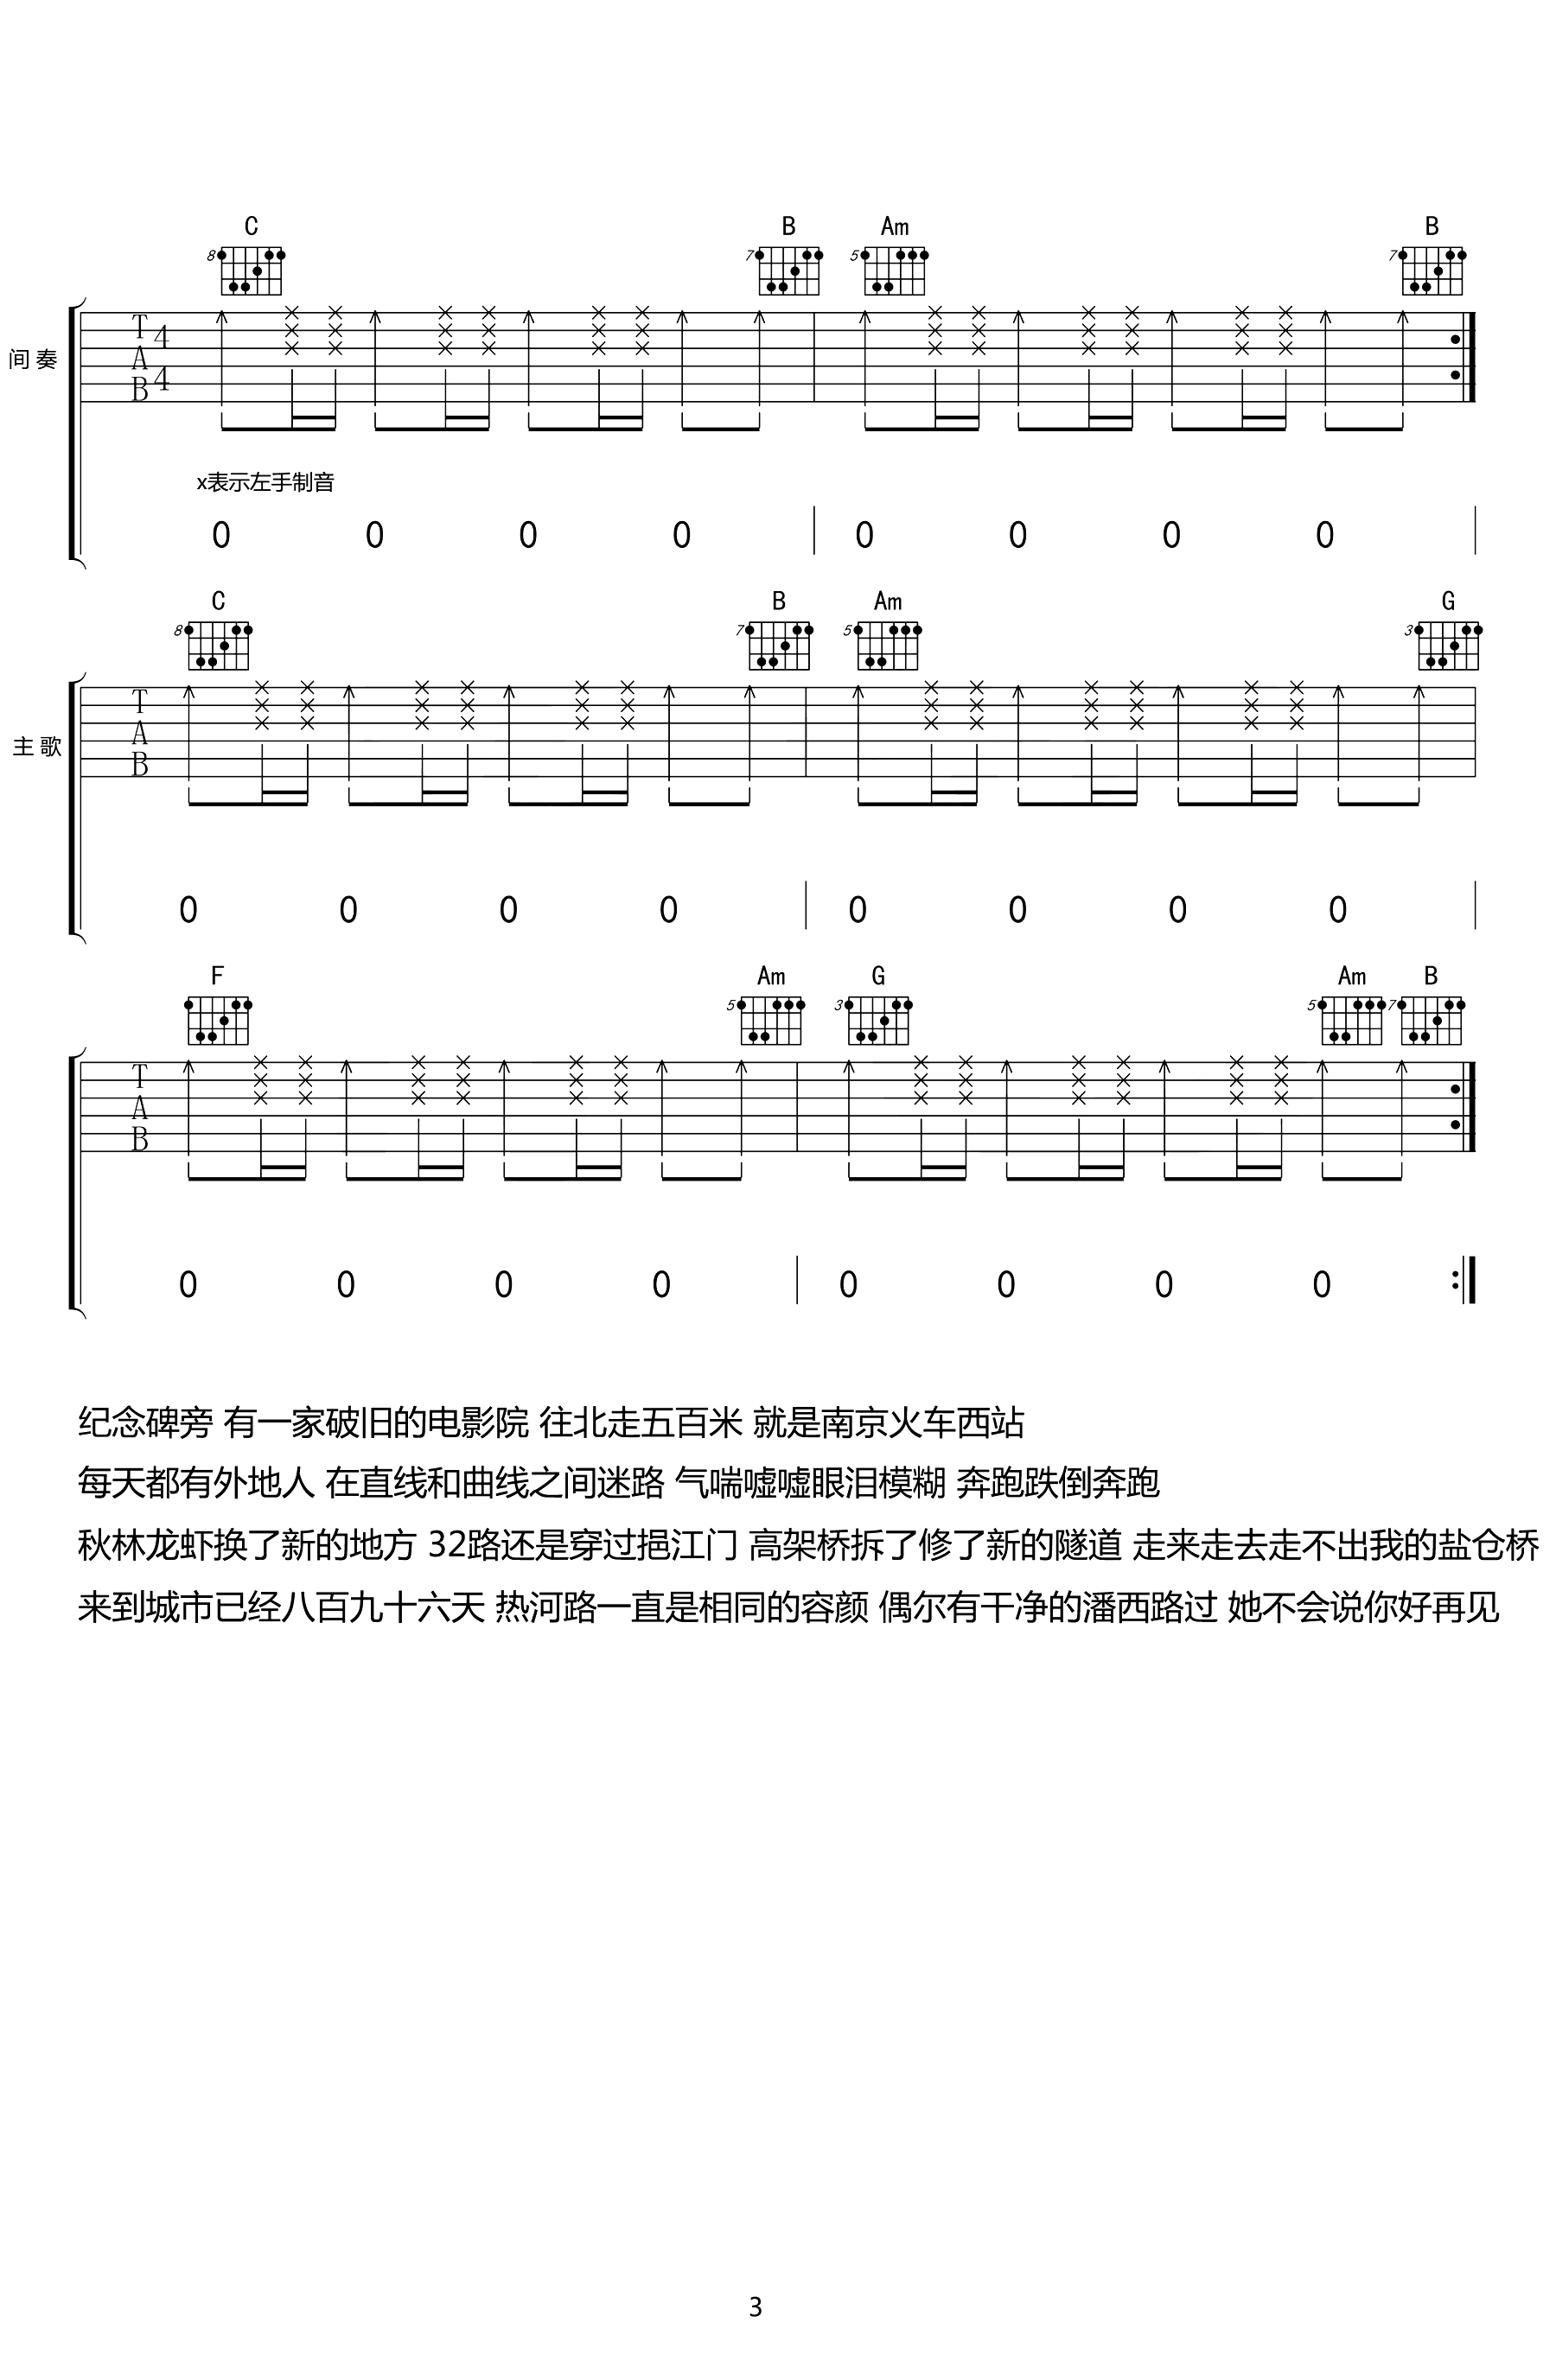 liberationcd吉他专卖_北京吉他专卖_北京 北京 吉他曲